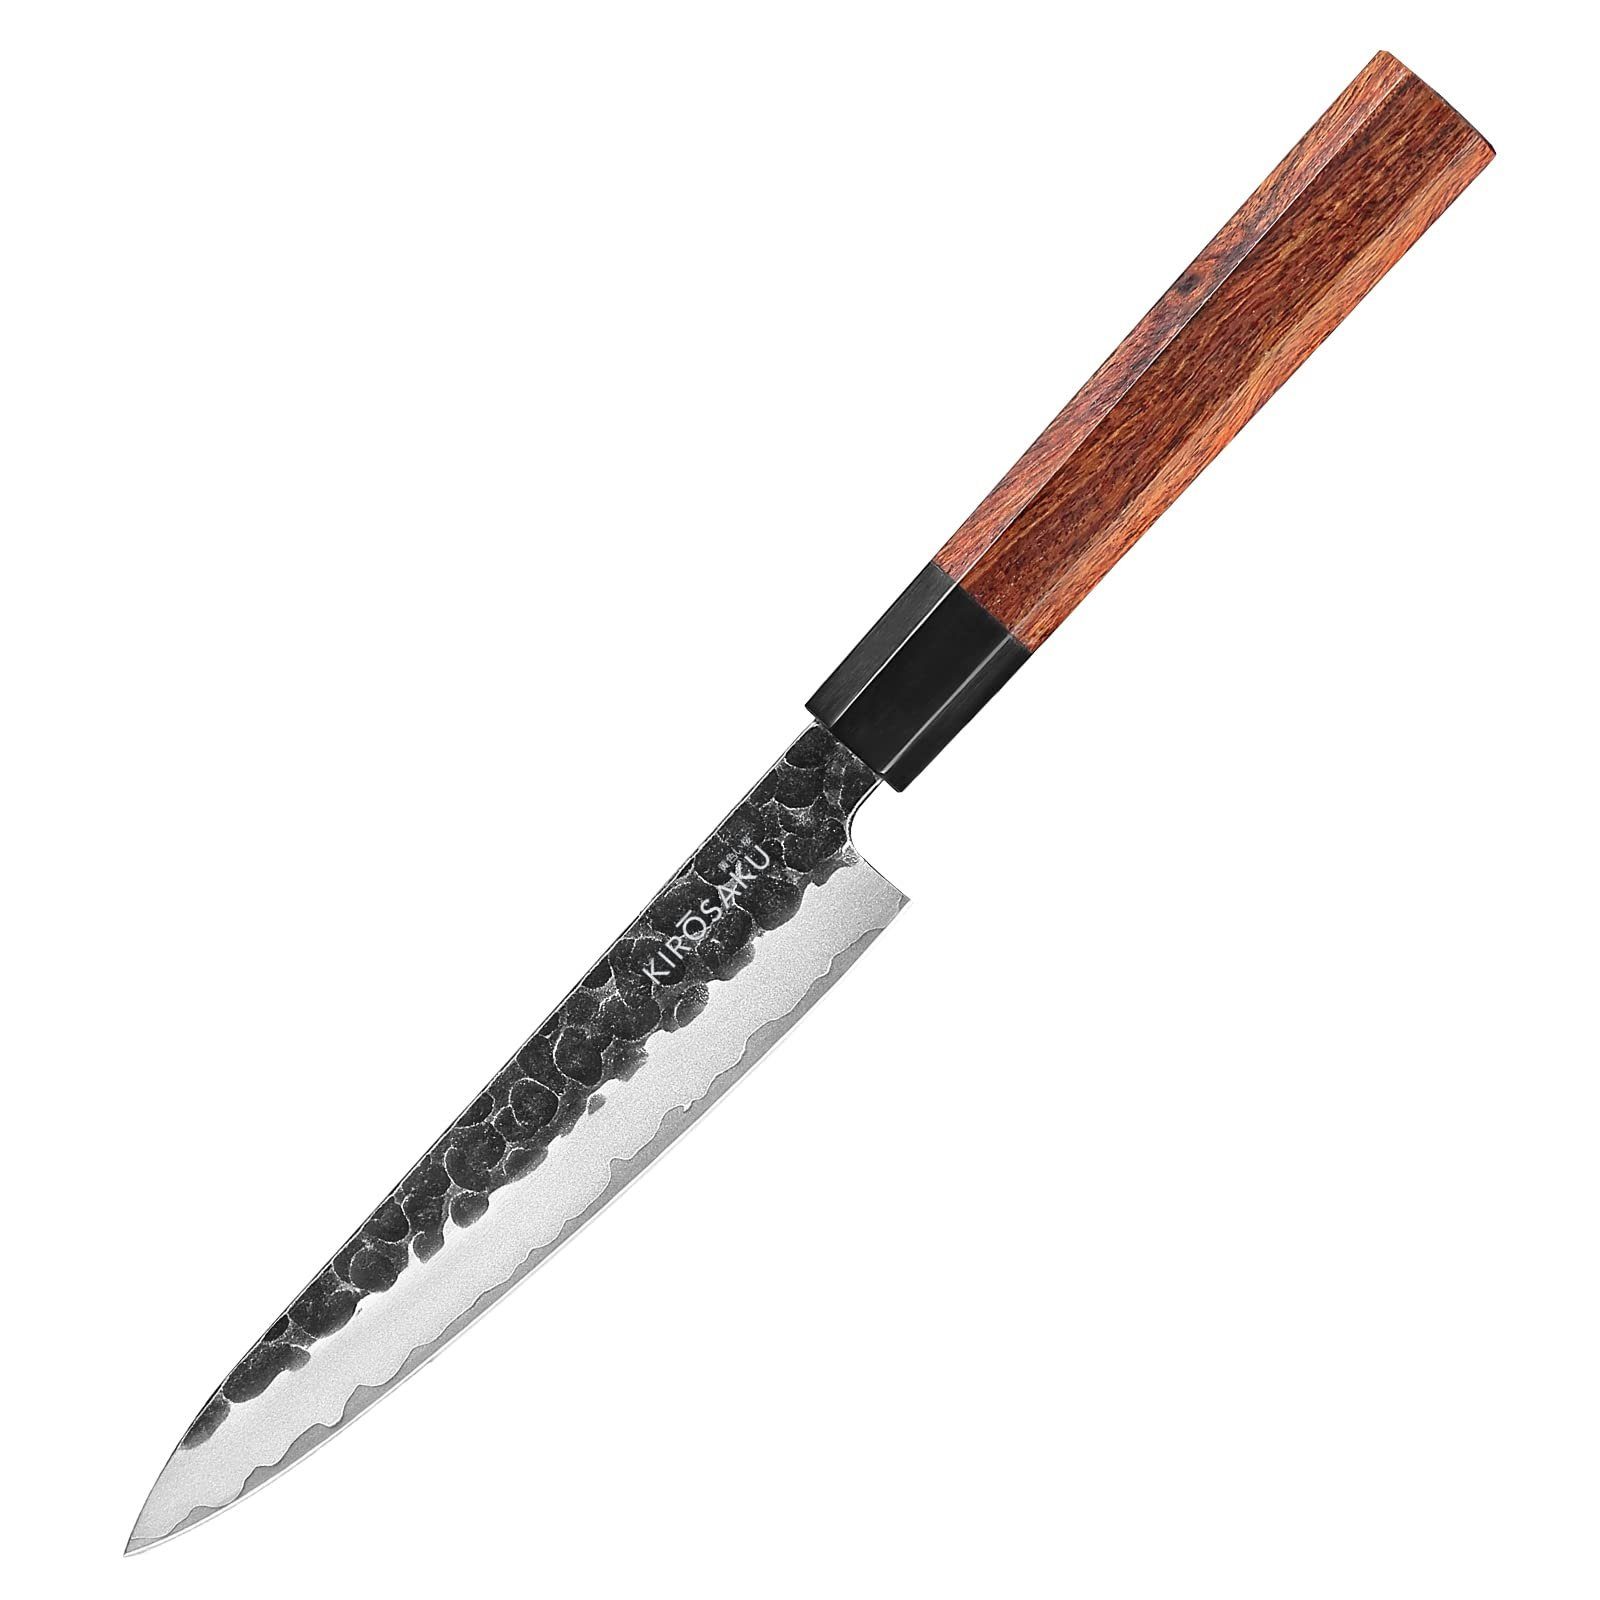 Kirosaku Asiamesser Carbon Küchenmesser - Japanischer Messer aus Stahl - 15cm Klinge, Iii. Hellbraun 15 Cm